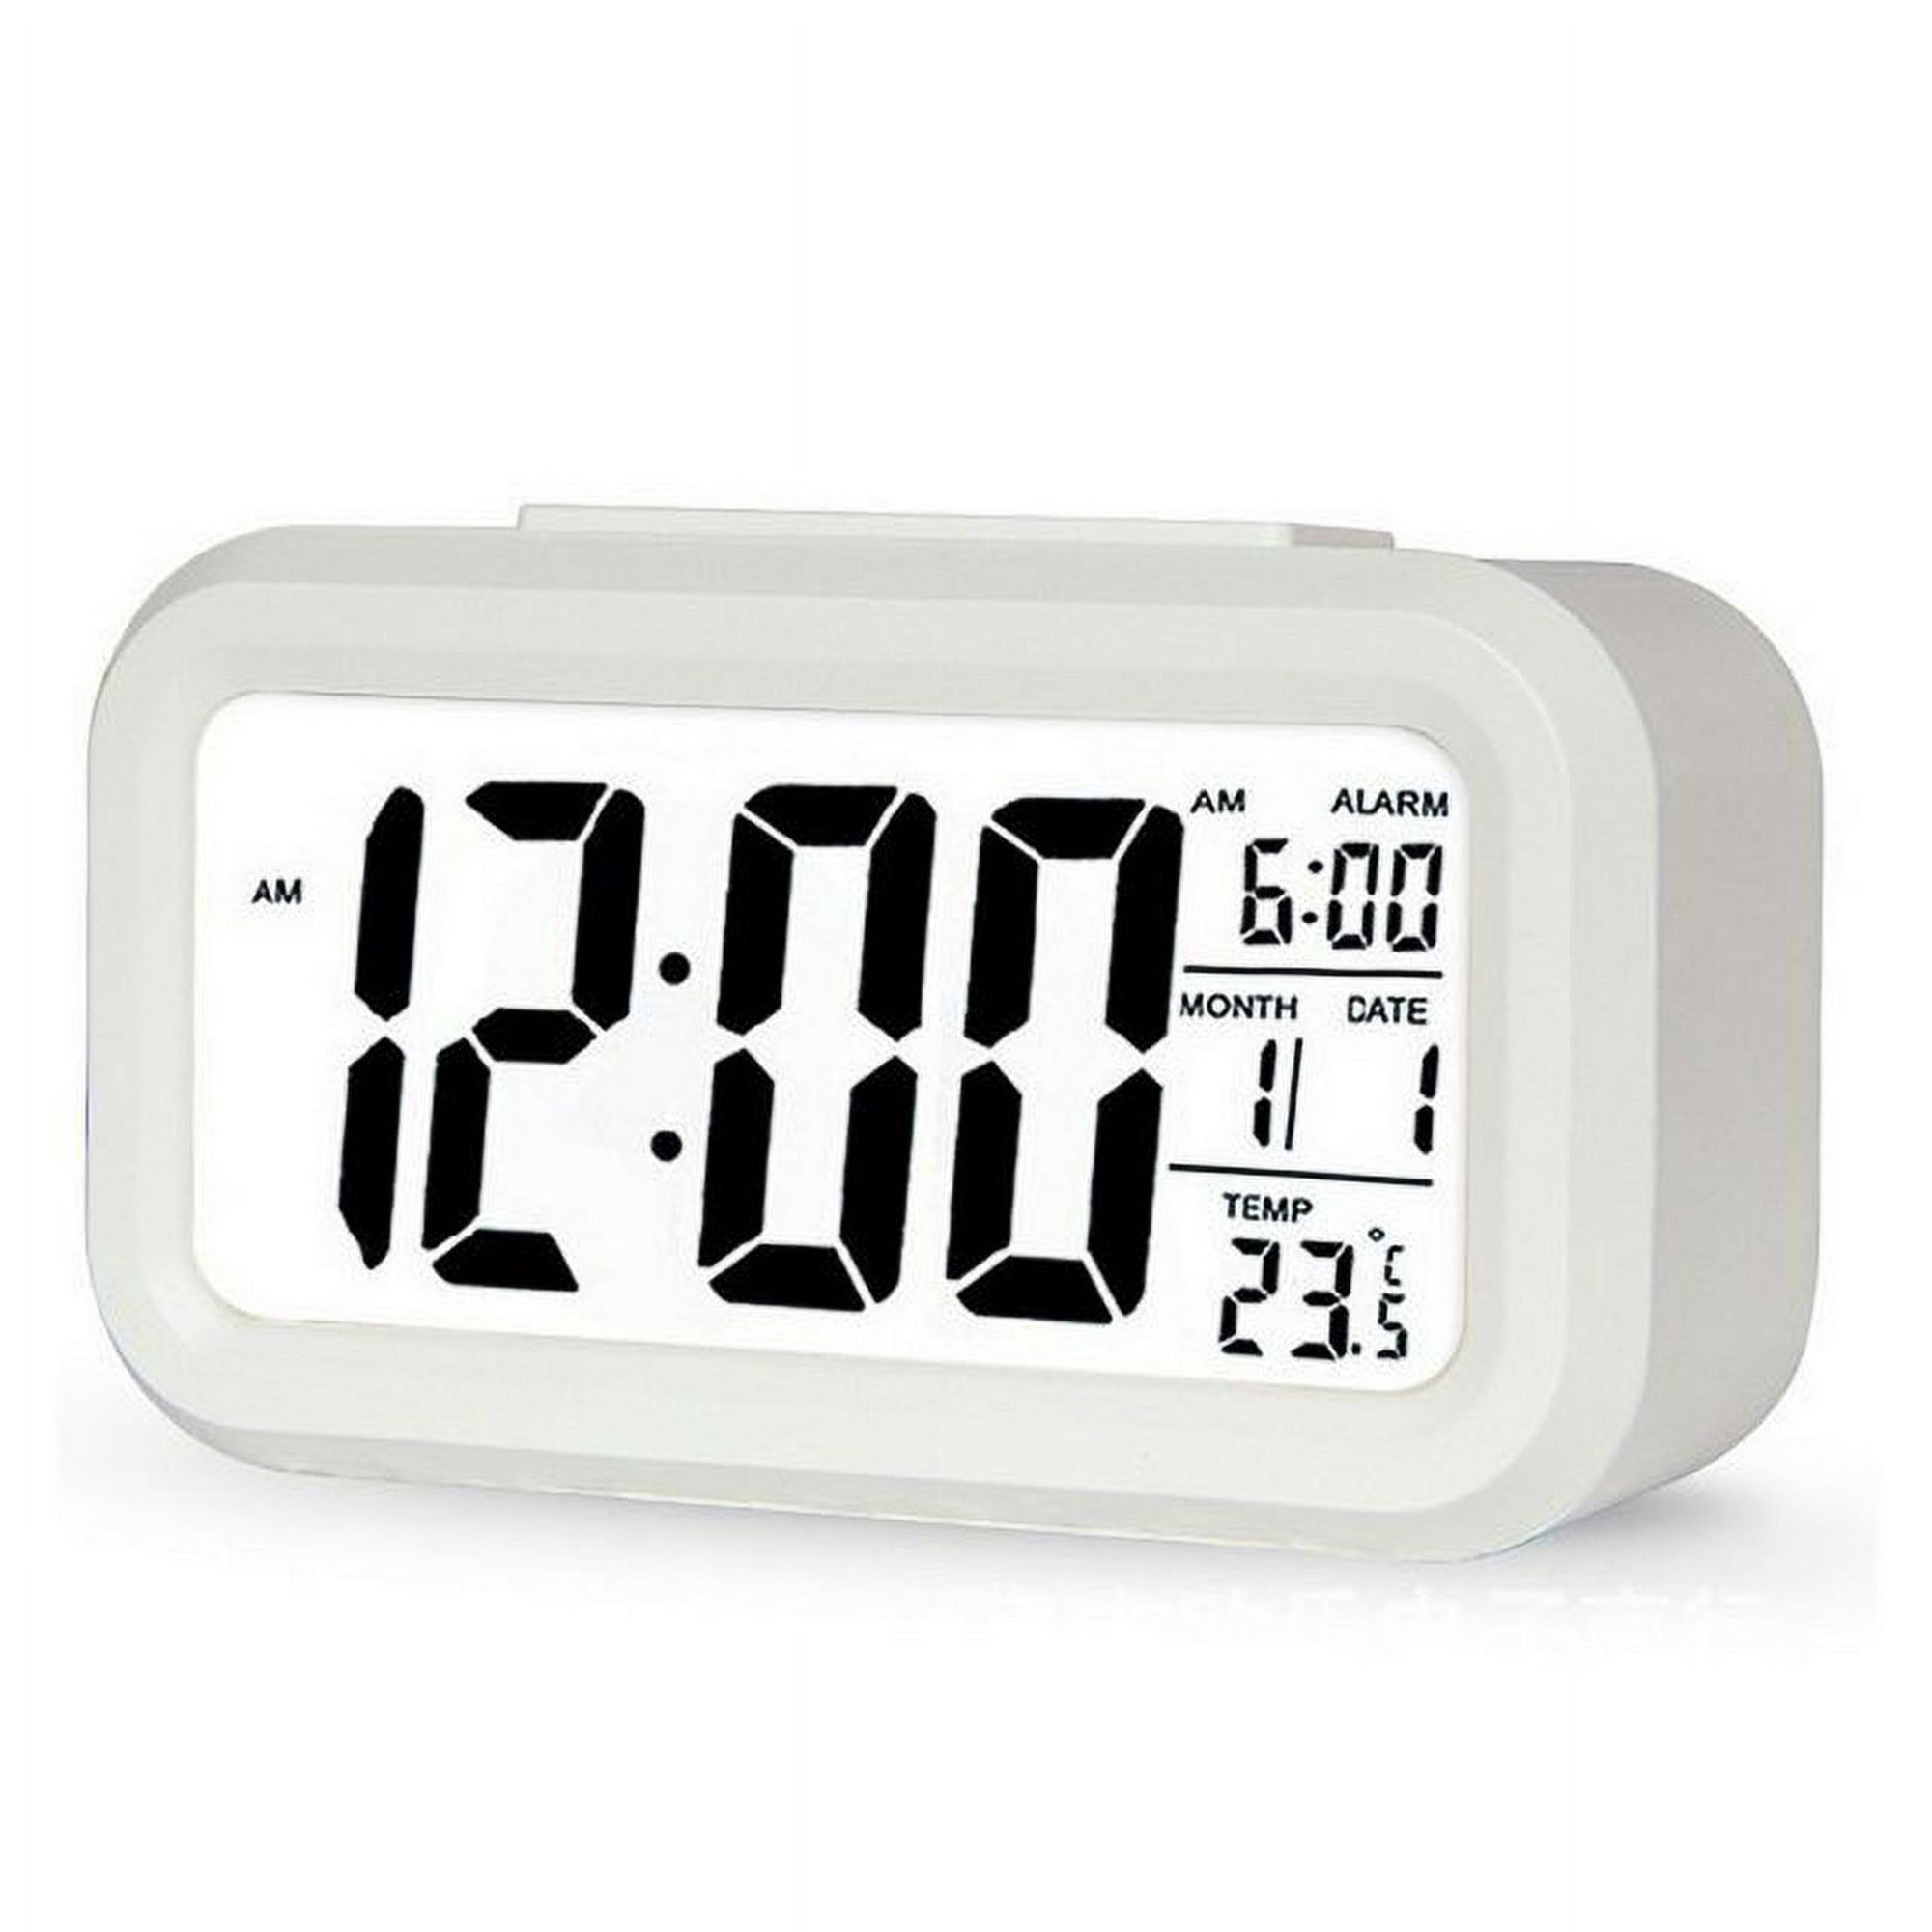 Reloj despertador digital multifuncional Led luz inteligente reloj  temperatura calendario perpetuo rosa brillar Electrónica